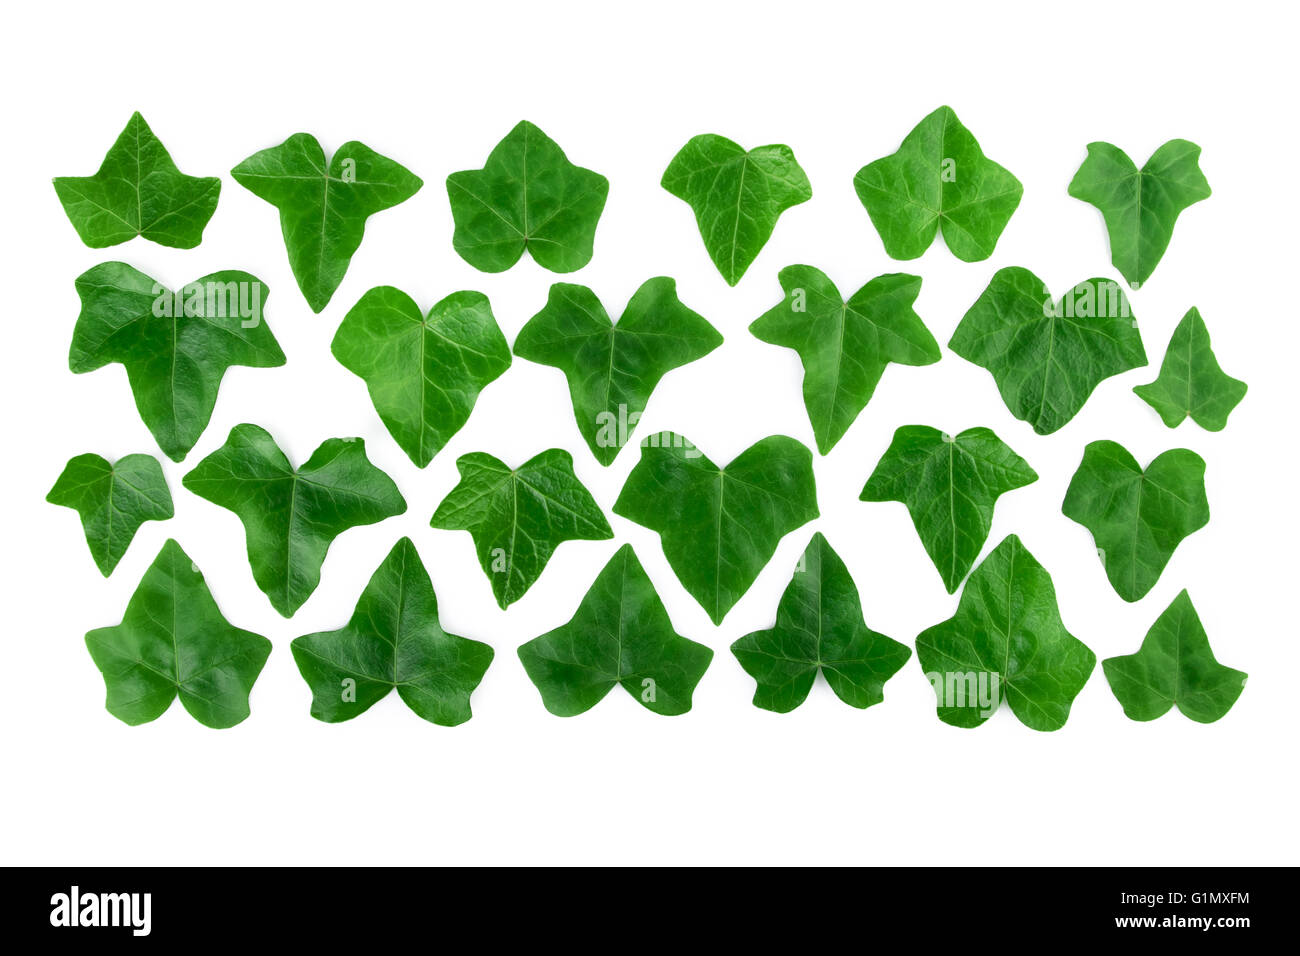 Dessin ligne de feuilles de lierre vert isolé sur fond blanc. Mise à plat. Banque D'Images